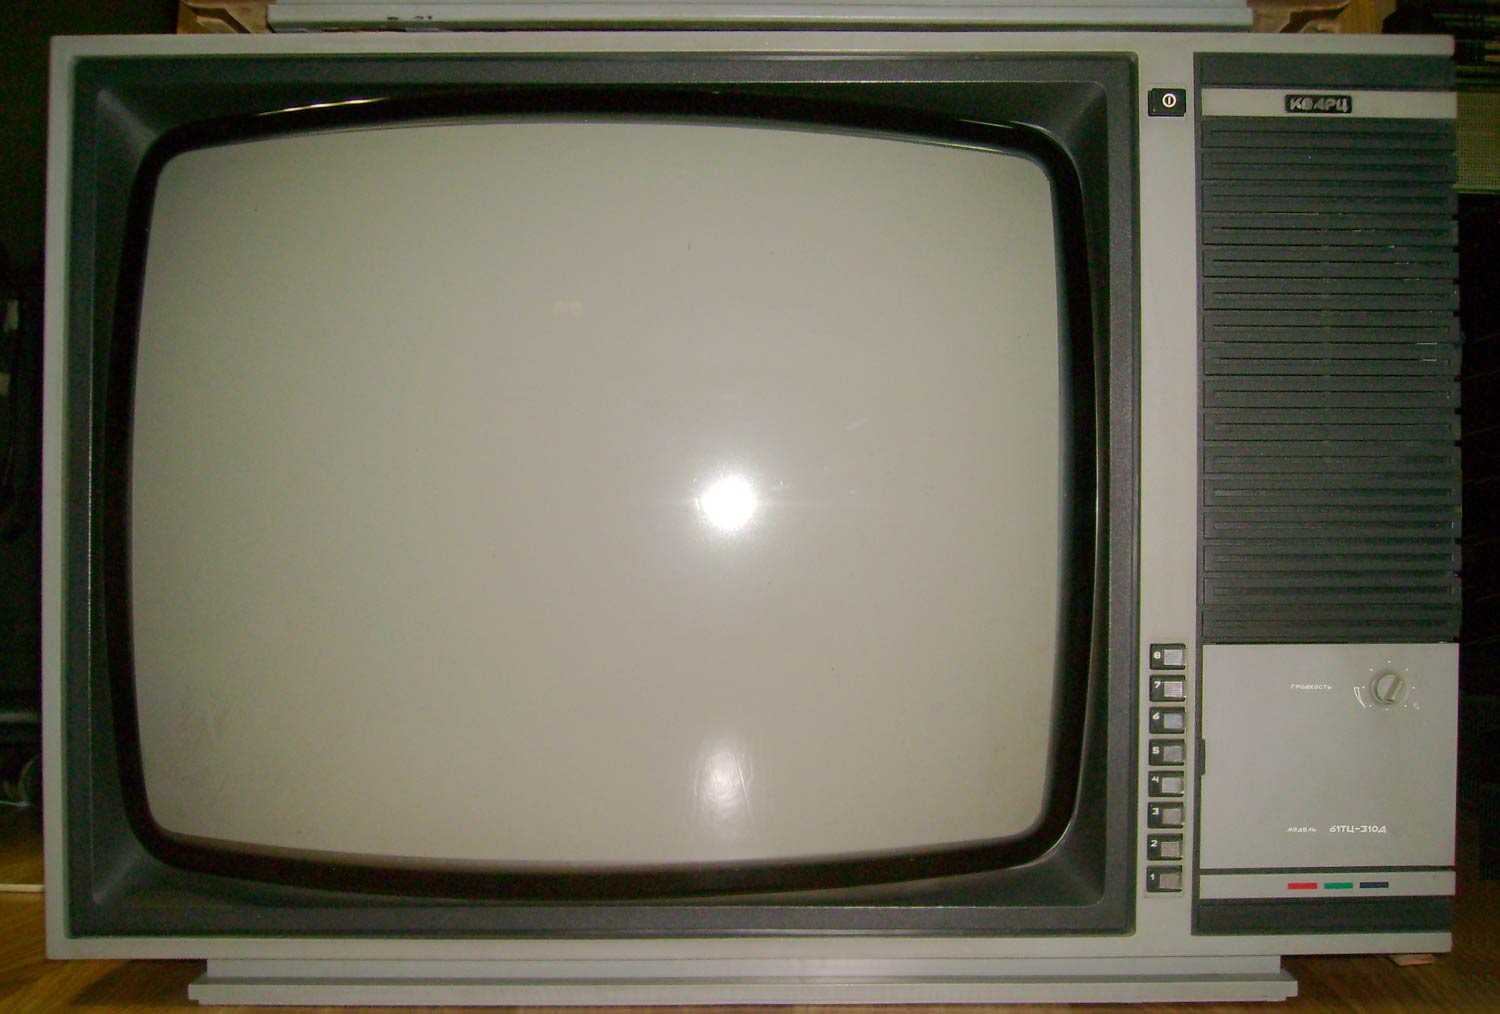 Телевизор 80 сантиметров. Кварц 61тц-310д. Кварц 310 телевизор. Телевизор кварц цветной 310д. Телевизор кварц цветной 61тц-310д.